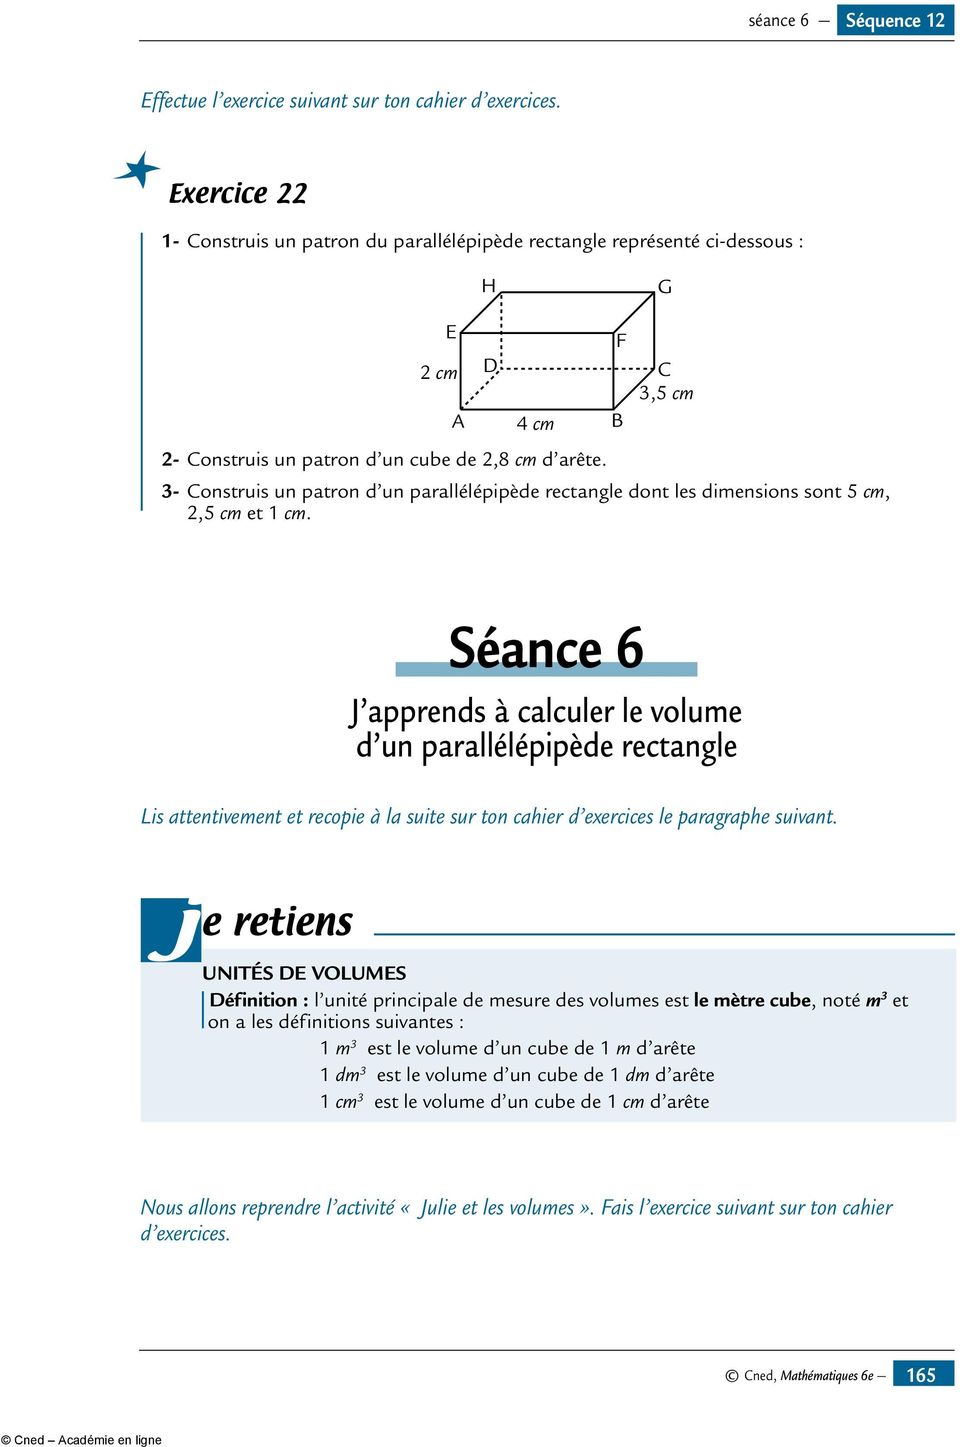 F B C 3,5 cm 3- Construis un patron d un parallélépipède rectangle dont les dimensions sont 5 cm, 2,5 cm et 1 cm.